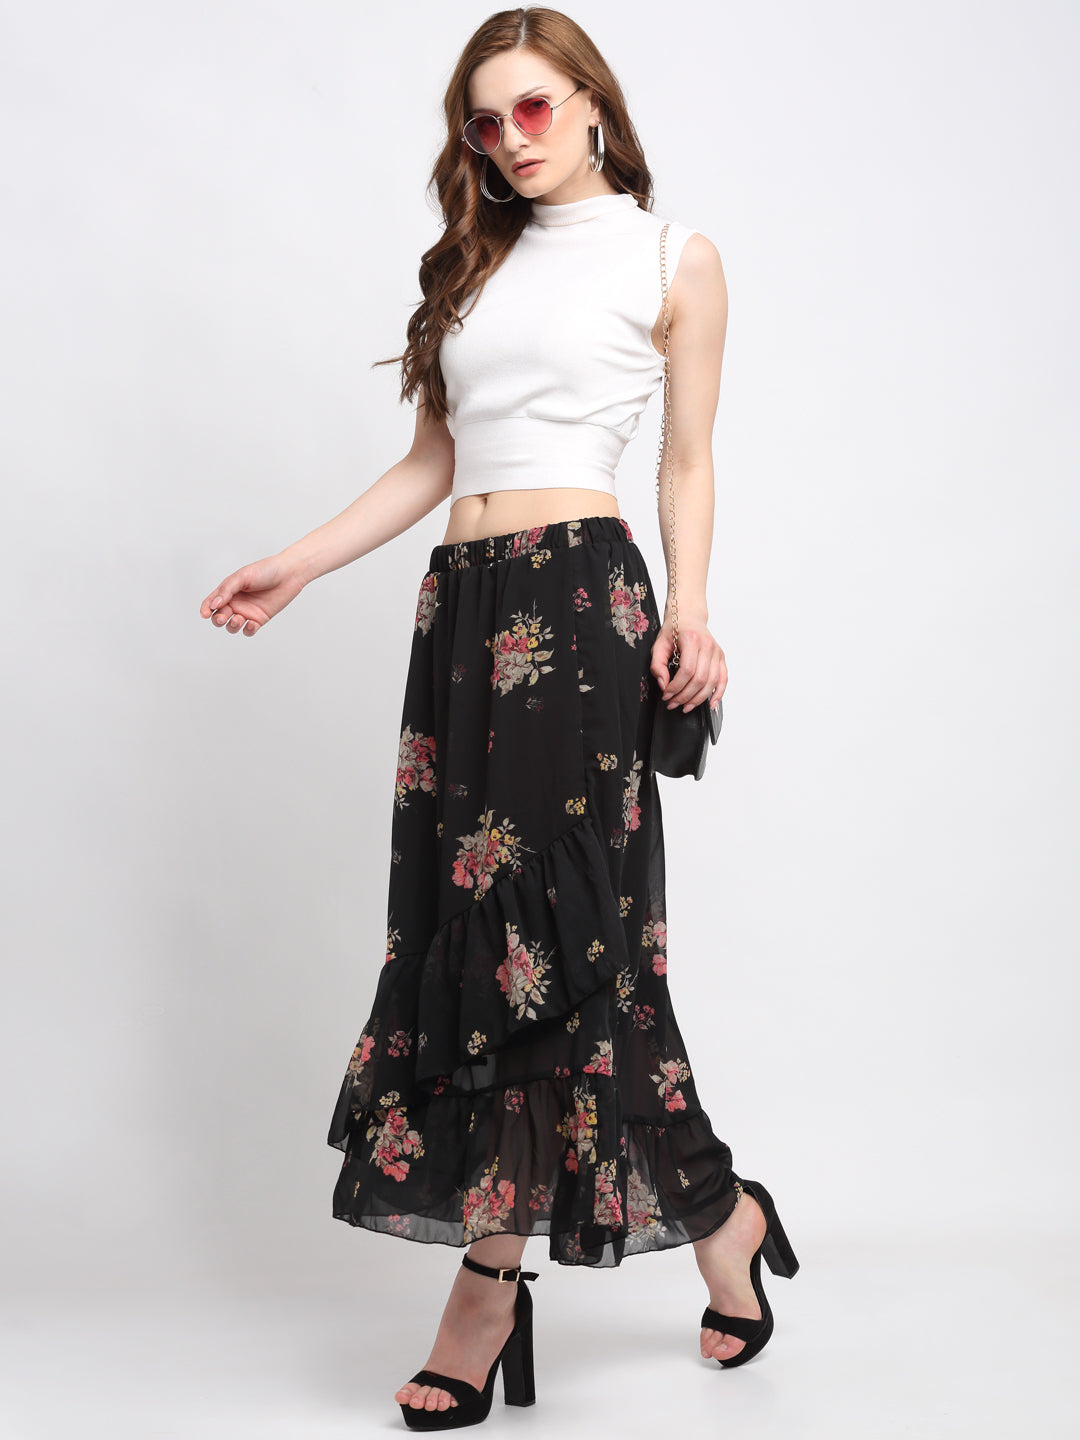 KLOTTHE Black Polyester Floral Skirt